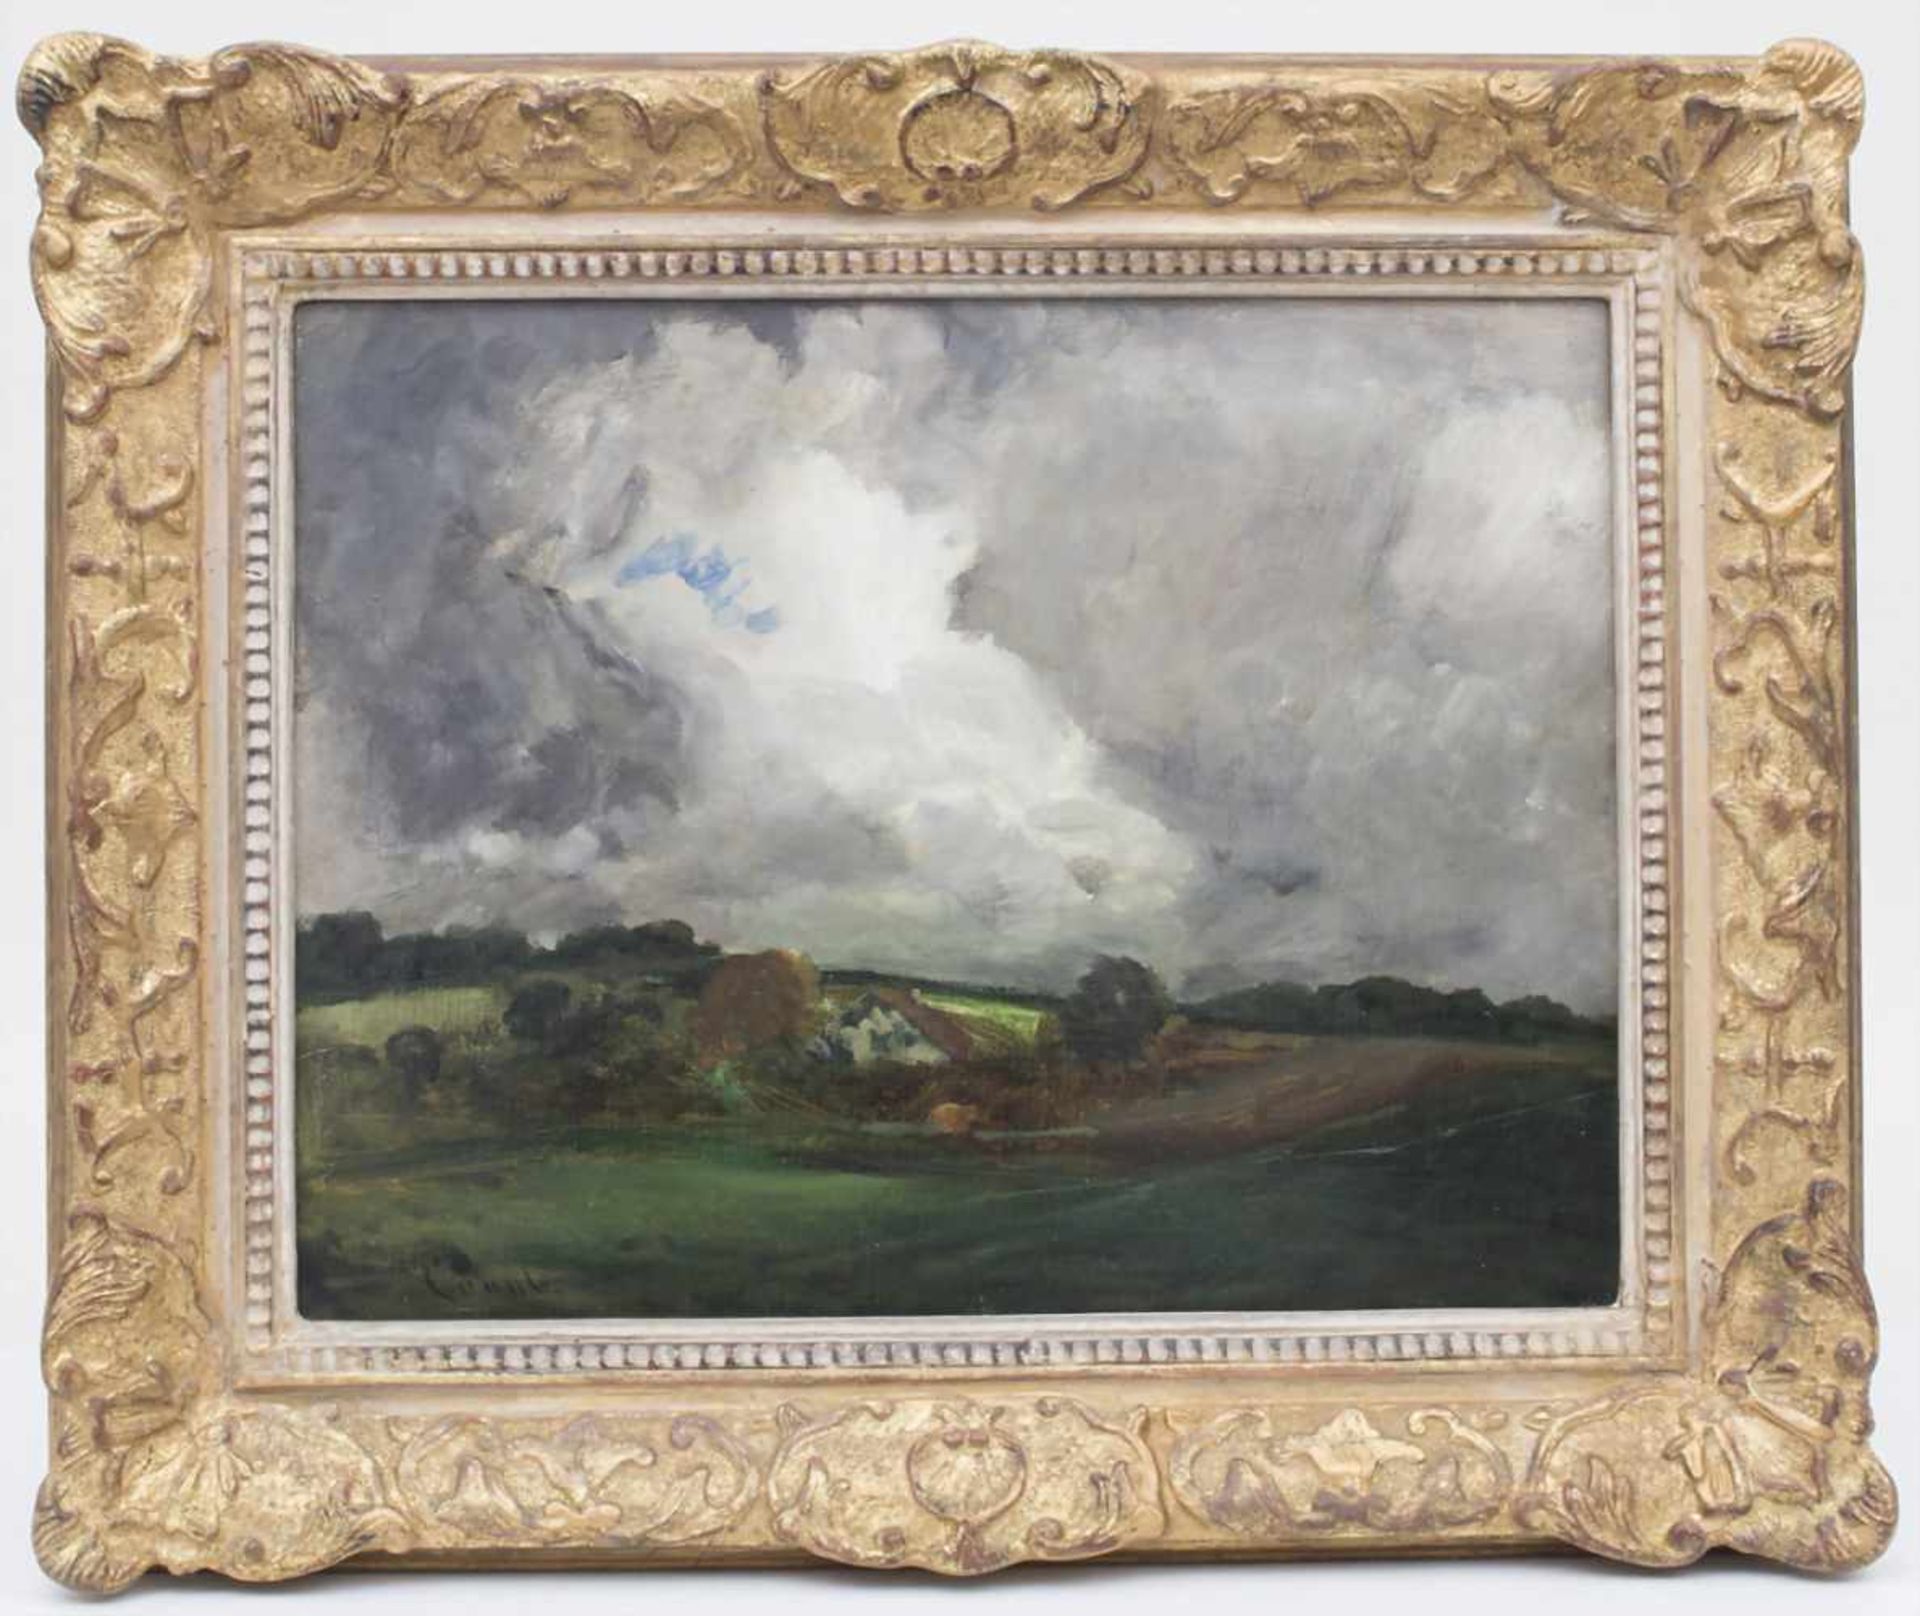 Gilbert von Canal (1849-1927), 'Landschaft mit Gewitterwolken' / 'A landscape with thunderclouds' - Bild 2 aus 5